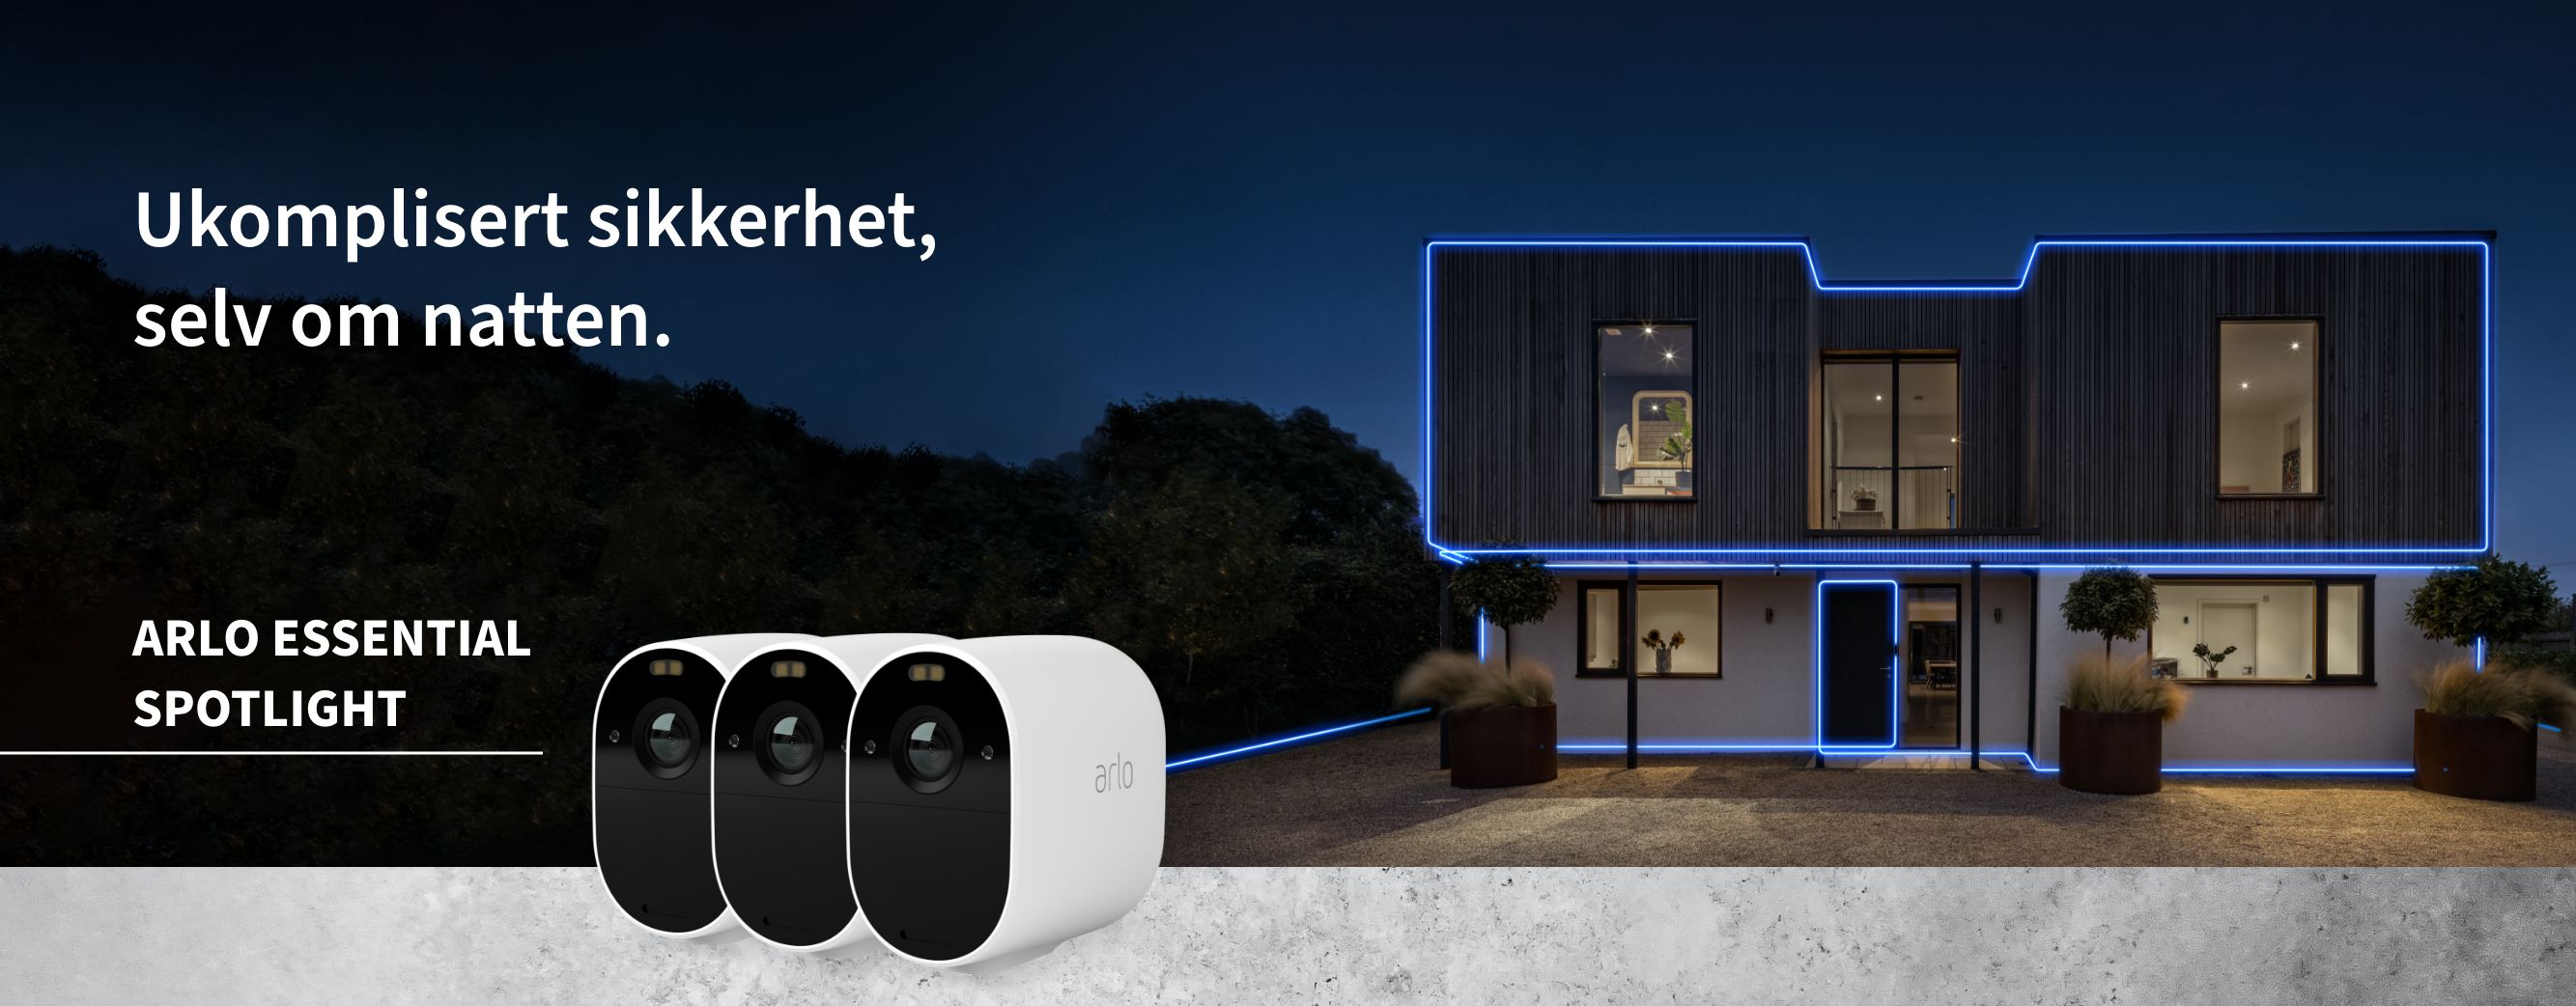 Arlo Essential Spotlight-kamera festet til en dør, Reddot-vinner 2021 UK